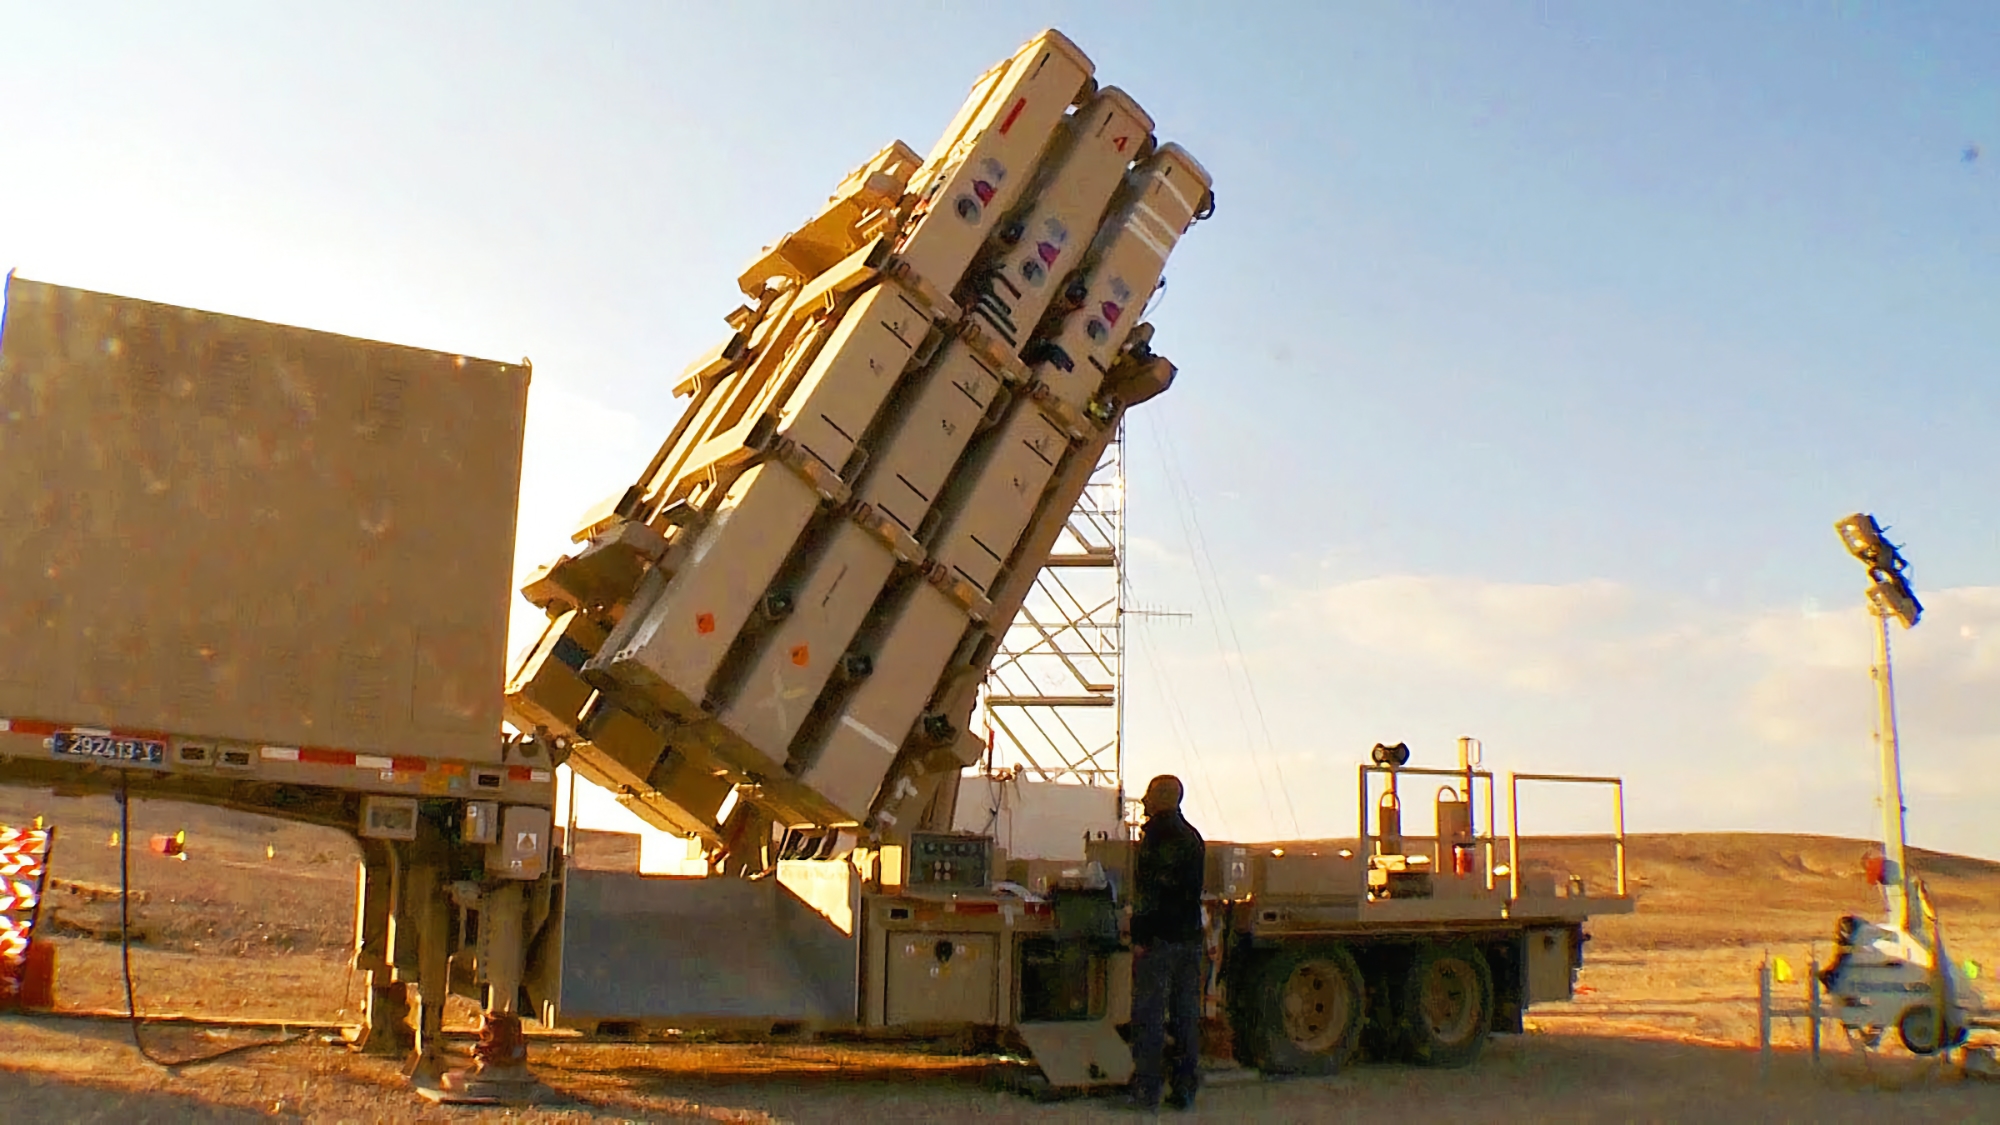 Gli Stati Uniti hanno approvato l'acquisto da parte della Finlandia del sistema di difesa missilistica israeliano David's Sling per 316 milioni di euro.